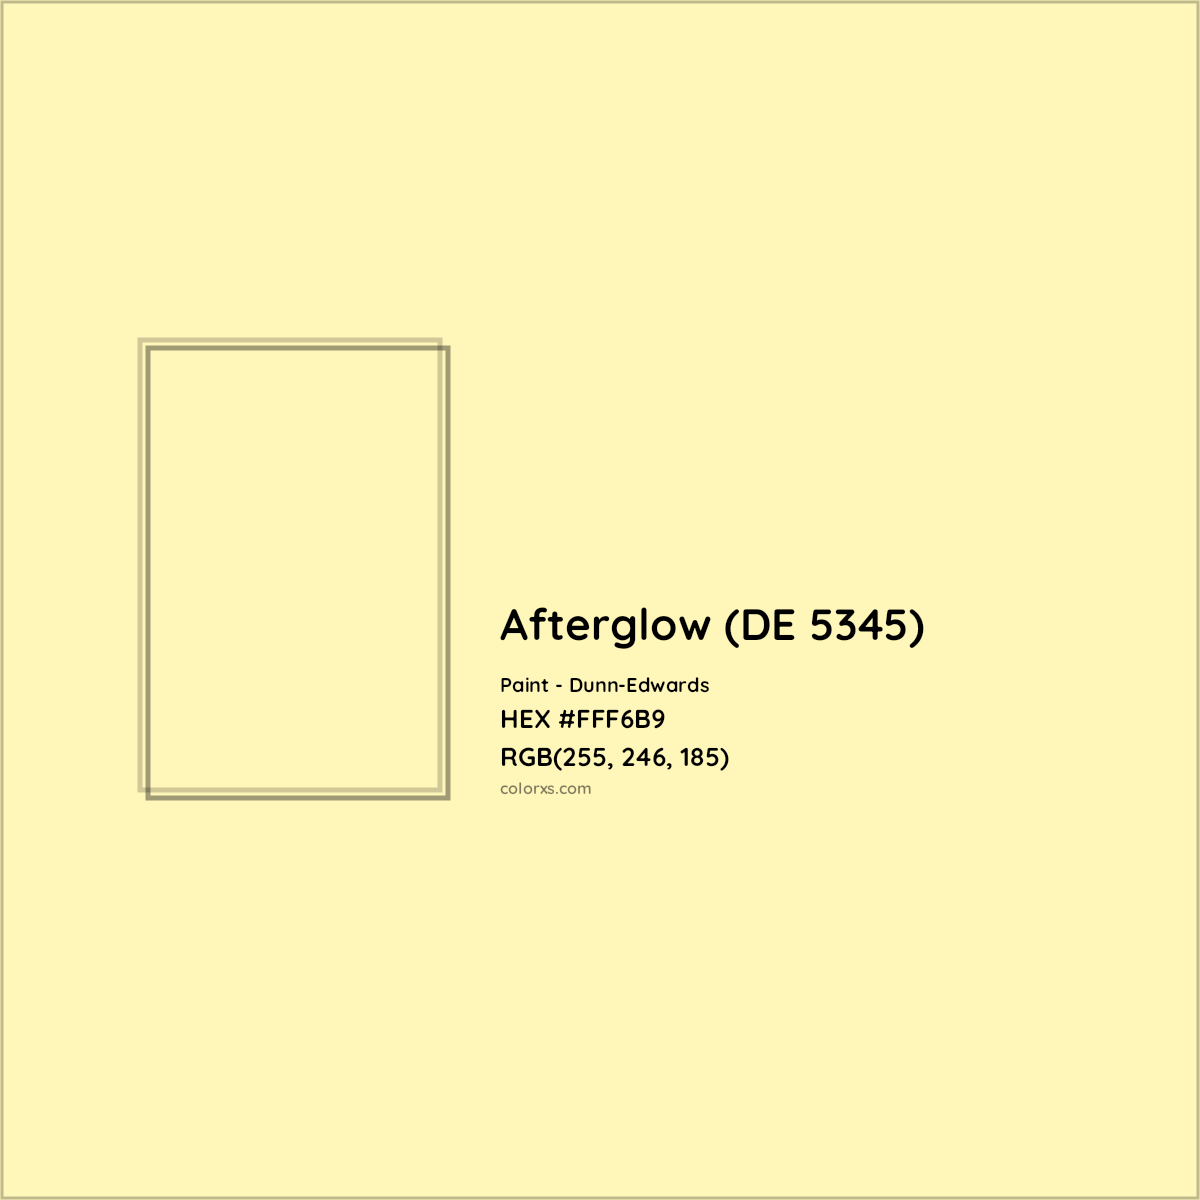 HEX #FFF6B9 Afterglow (DE 5345) Paint Dunn-Edwards - Color Code